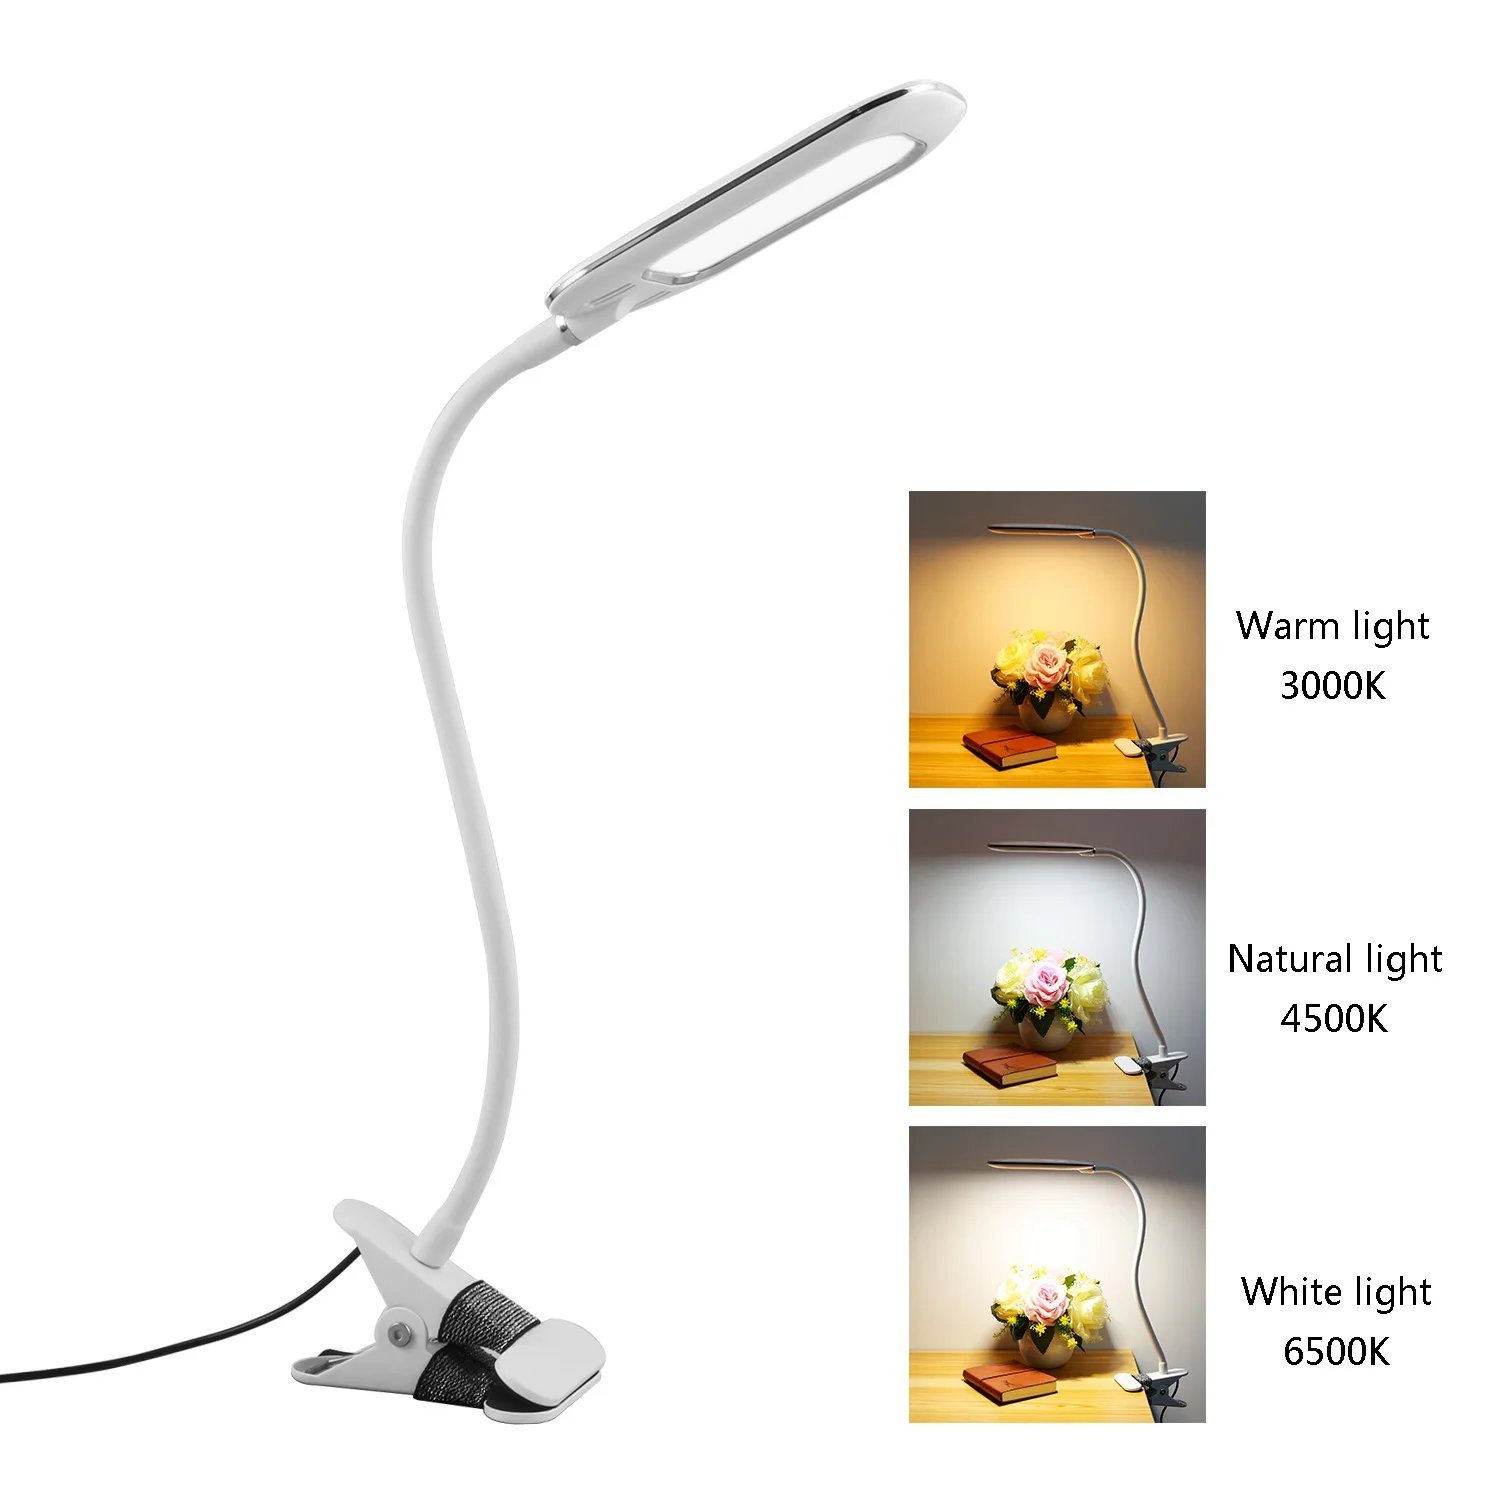 저렴한 USB 플러그인 Led 디밍 색상 혼합 클립 테이블 램프, 5W 하이라이트 독서 책상용 램프